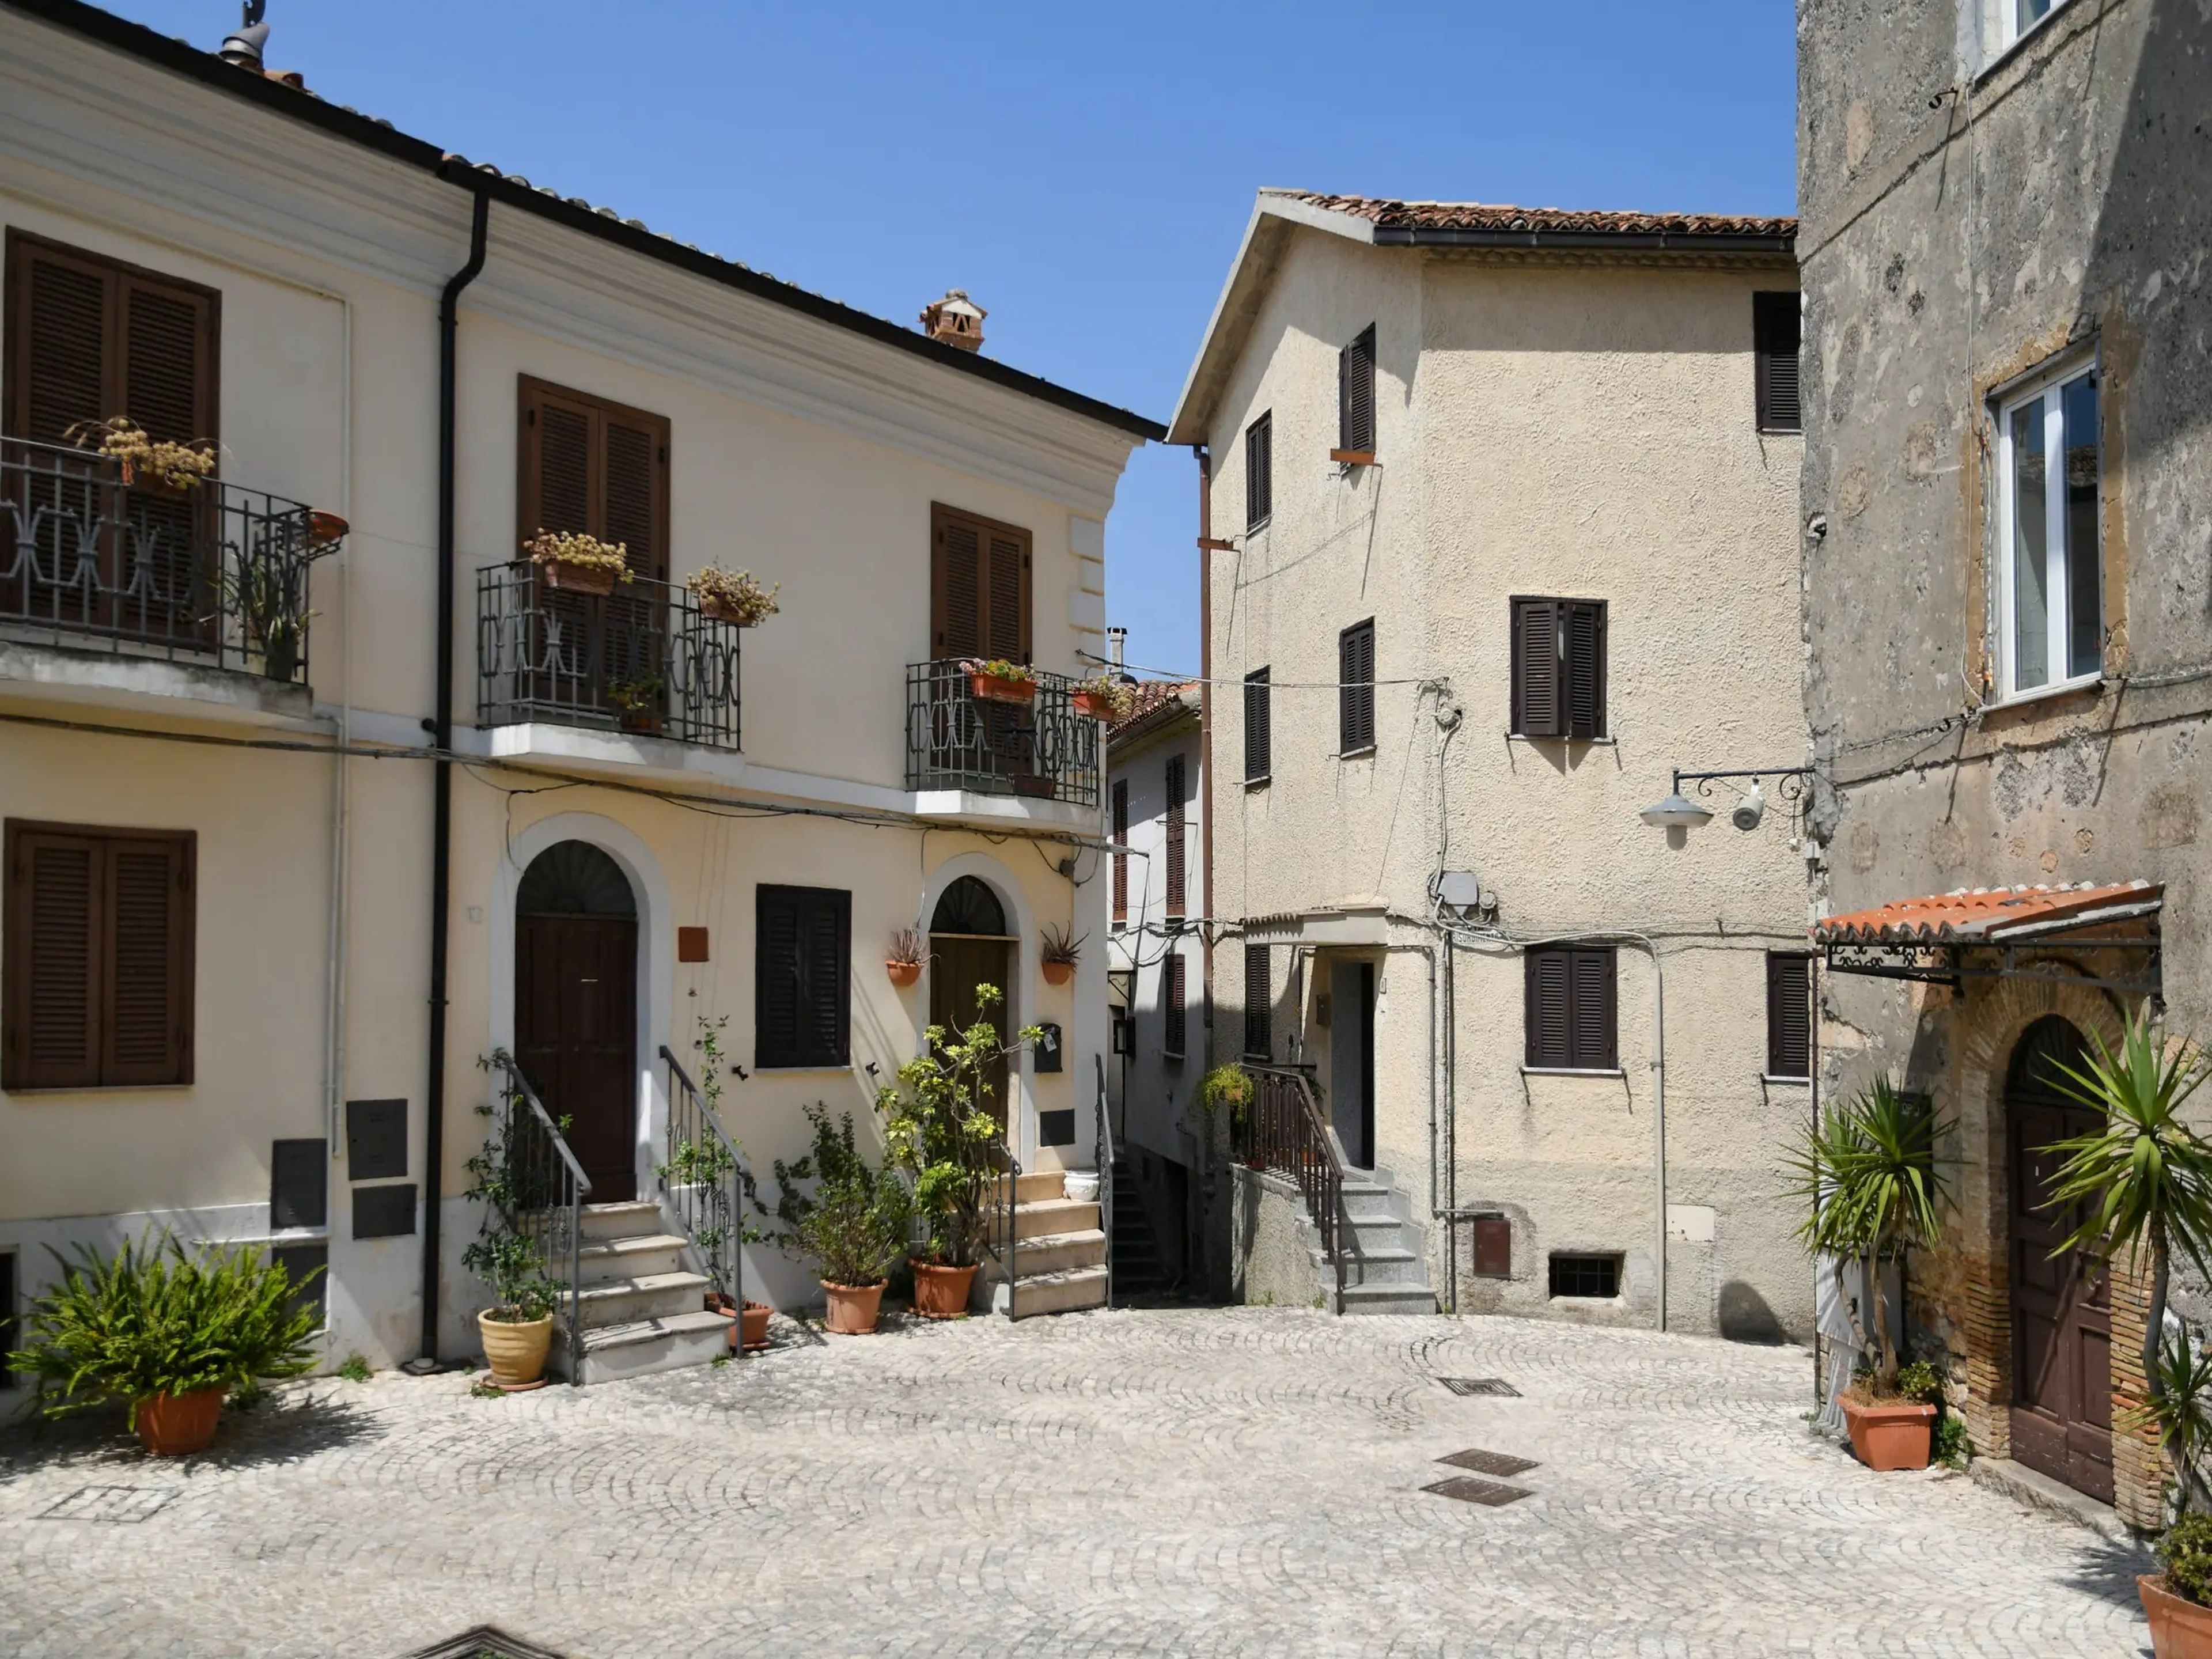 El pueblo medieval de Maenza en Italia.